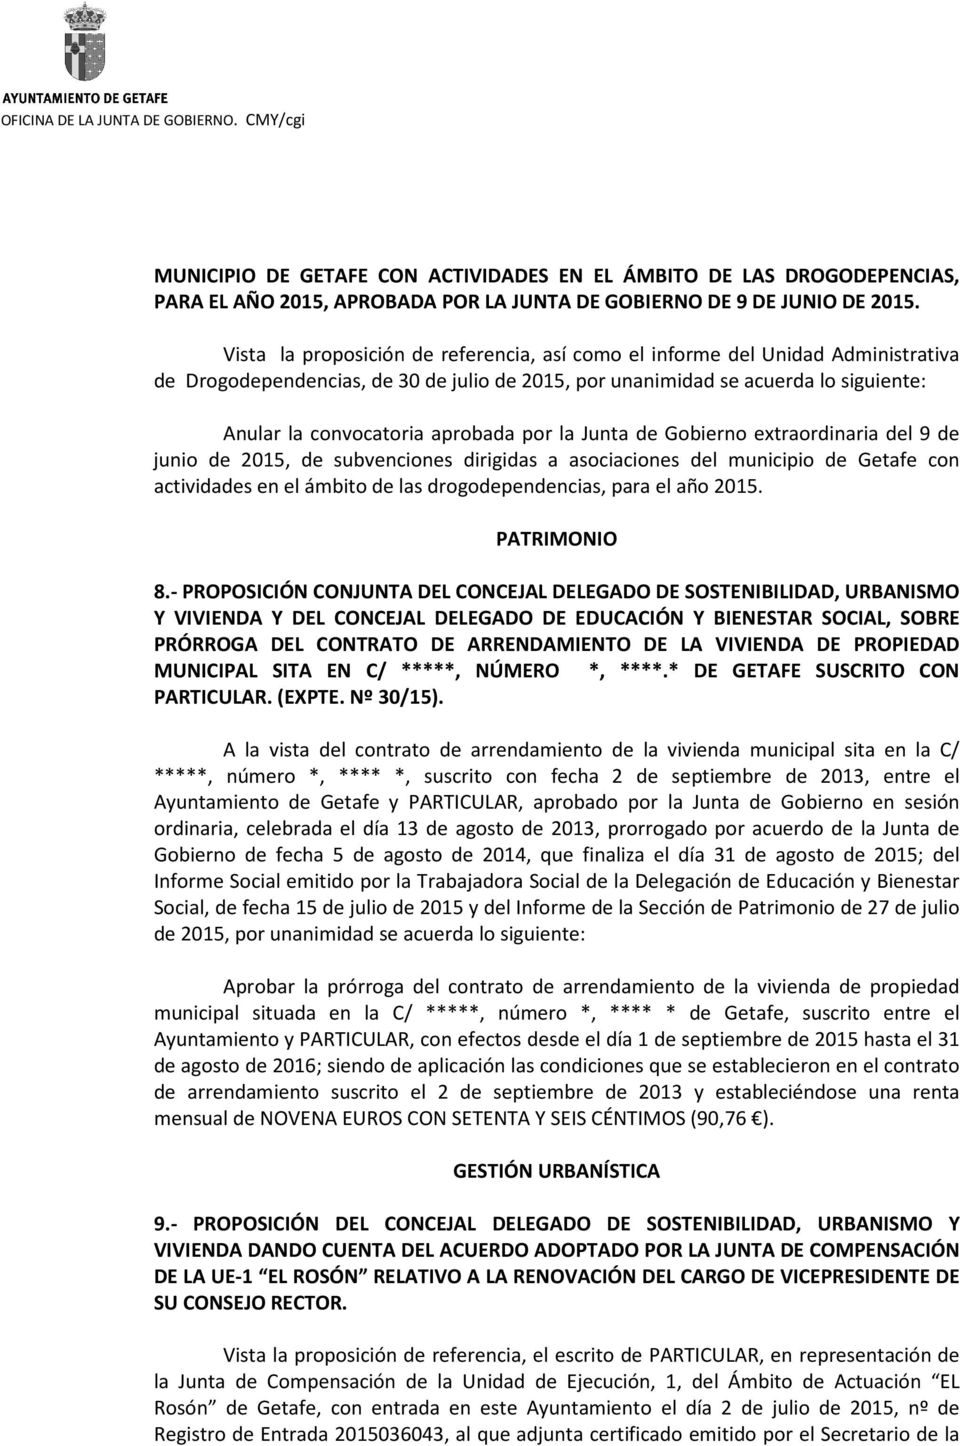 por la Junta de Gobierno extraordinaria del 9 de junio de 2015, de subvenciones dirigidas a asociaciones del municipio de Getafe con actividades en el ámbito de las drogodependencias, para el año